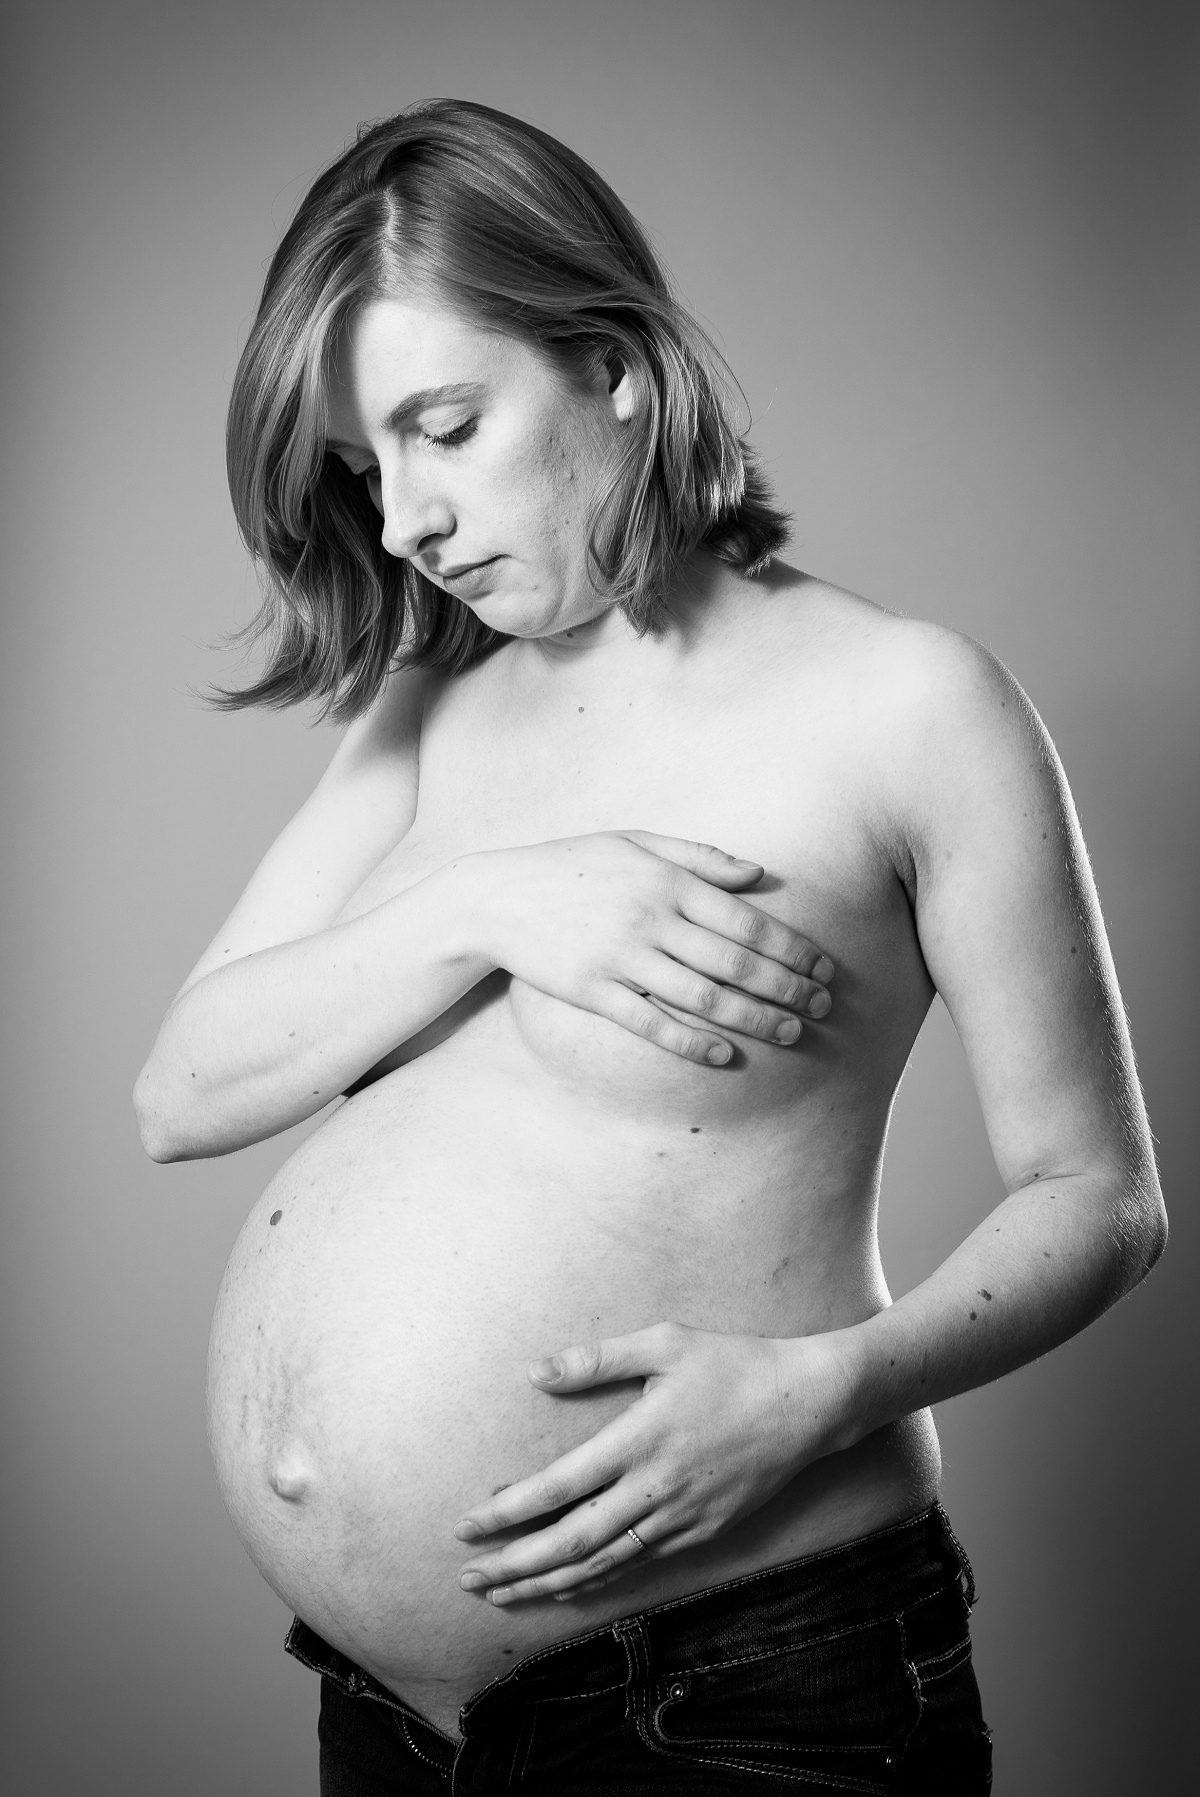 de belles photos pour ma grossesse - Photographe femme enceinte Lille nord pas de calais belgique